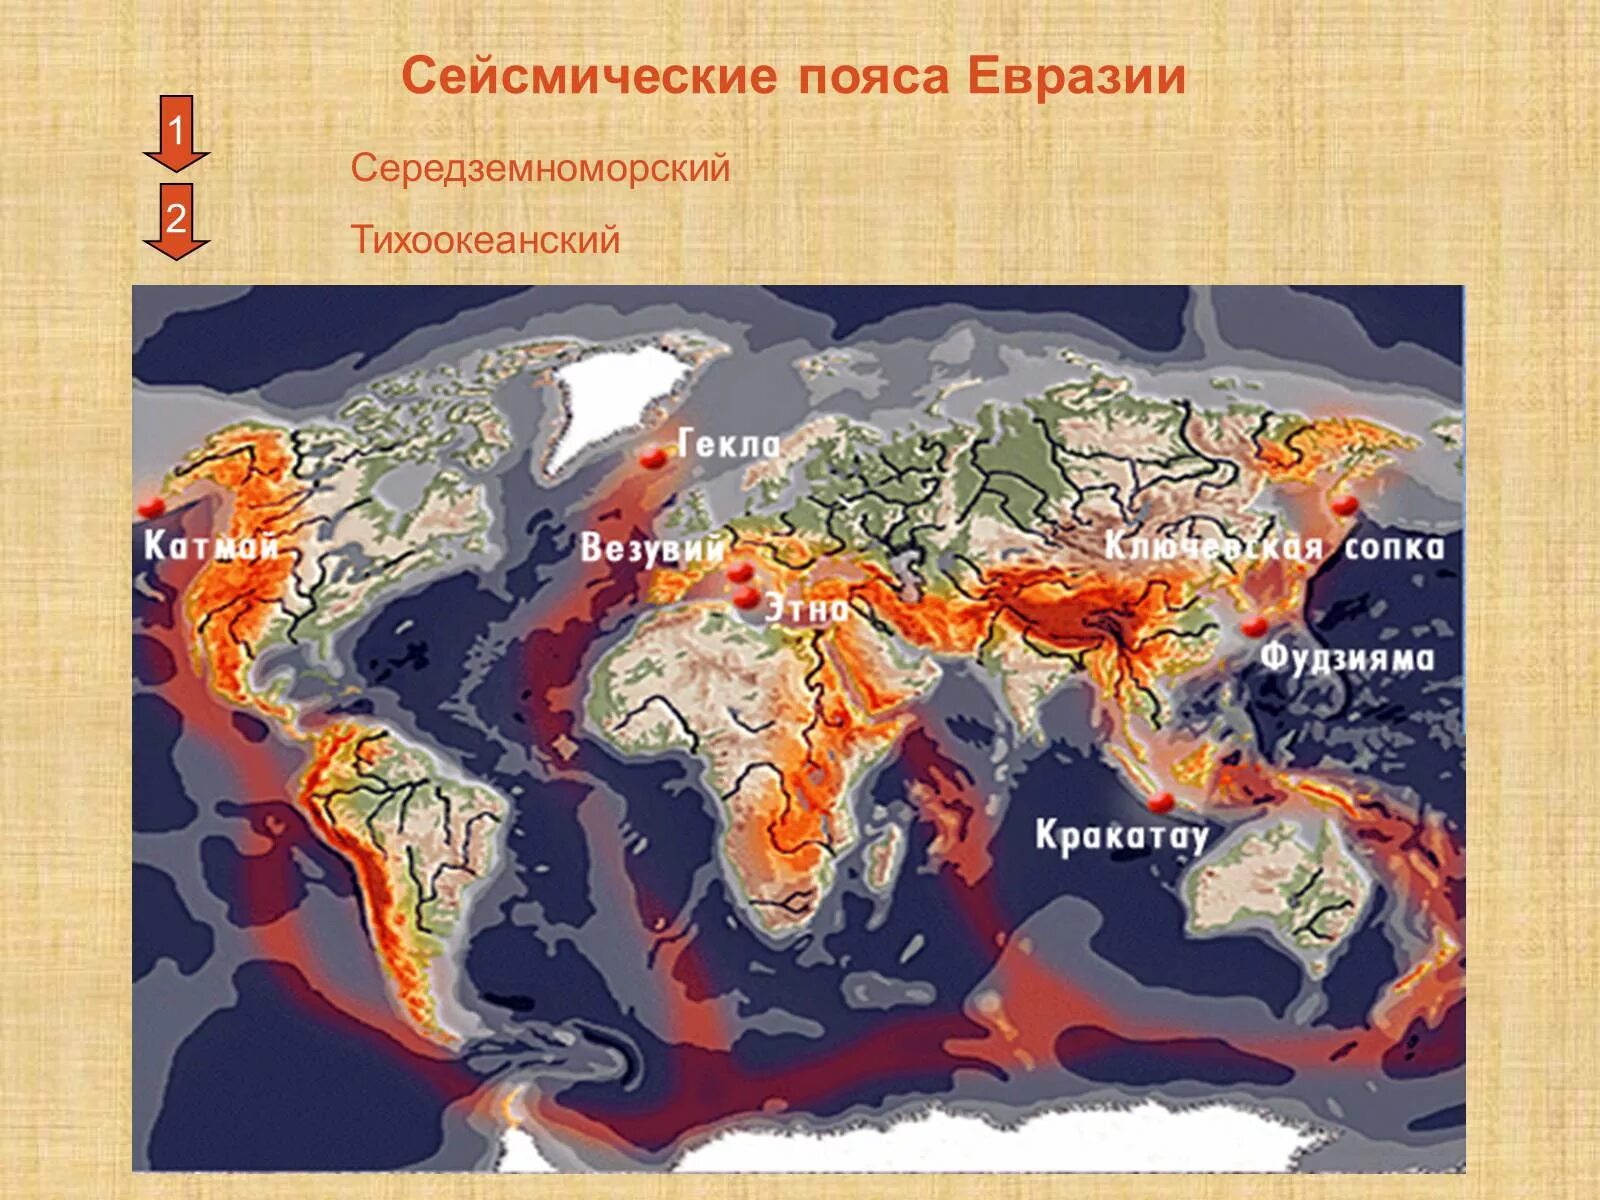 Тихоокеанский сейсмический пояс. Зоны сейсмической активности Евразии. Действующие вулканы Евразии на карте.